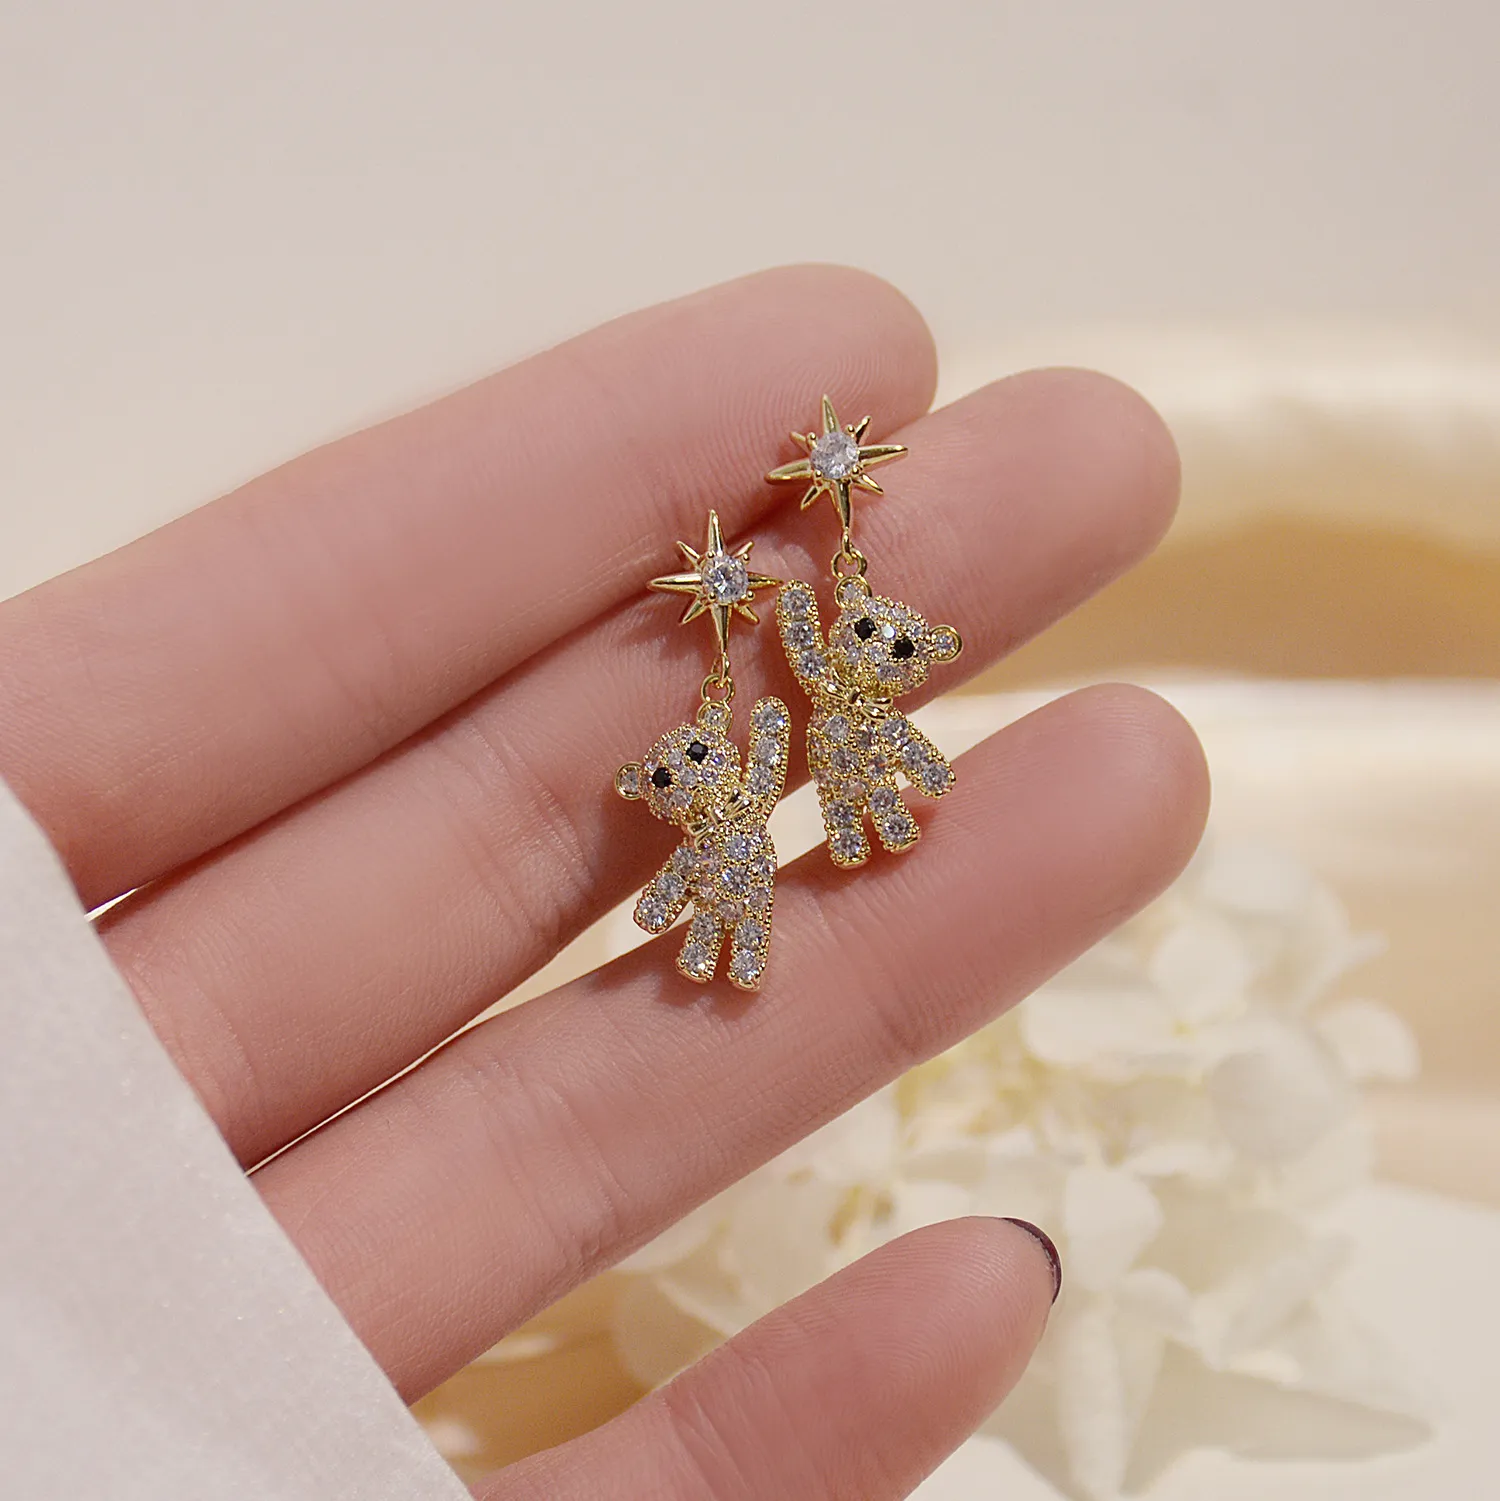 새로운 패션 네트 레드 전체 다이아몬드 베어 귀걸이 여성 한국어 버전 간단한 성격 작은 별 귀걸이 도매